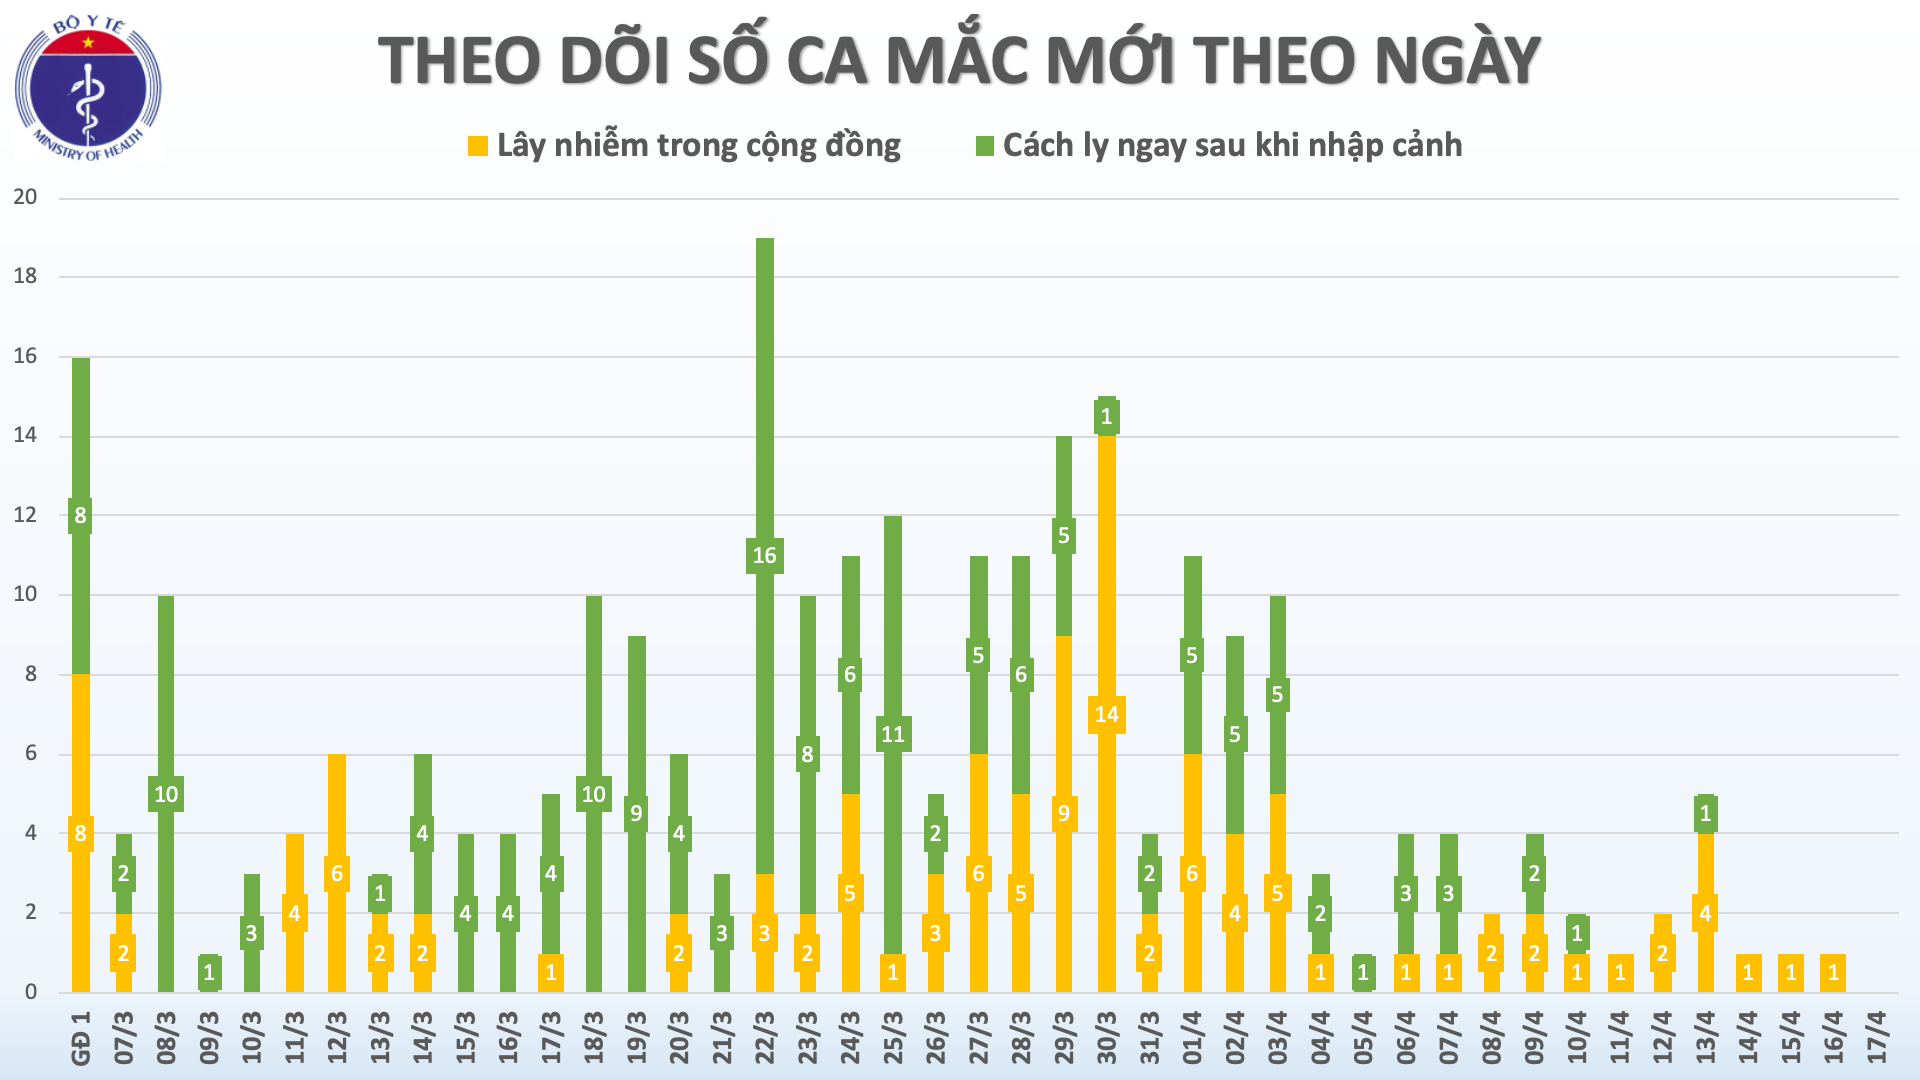 Tín hiệu vui: Việt Nam không ghi nhận thêm ca nhiễm mới Covid-19 trong 36h qua